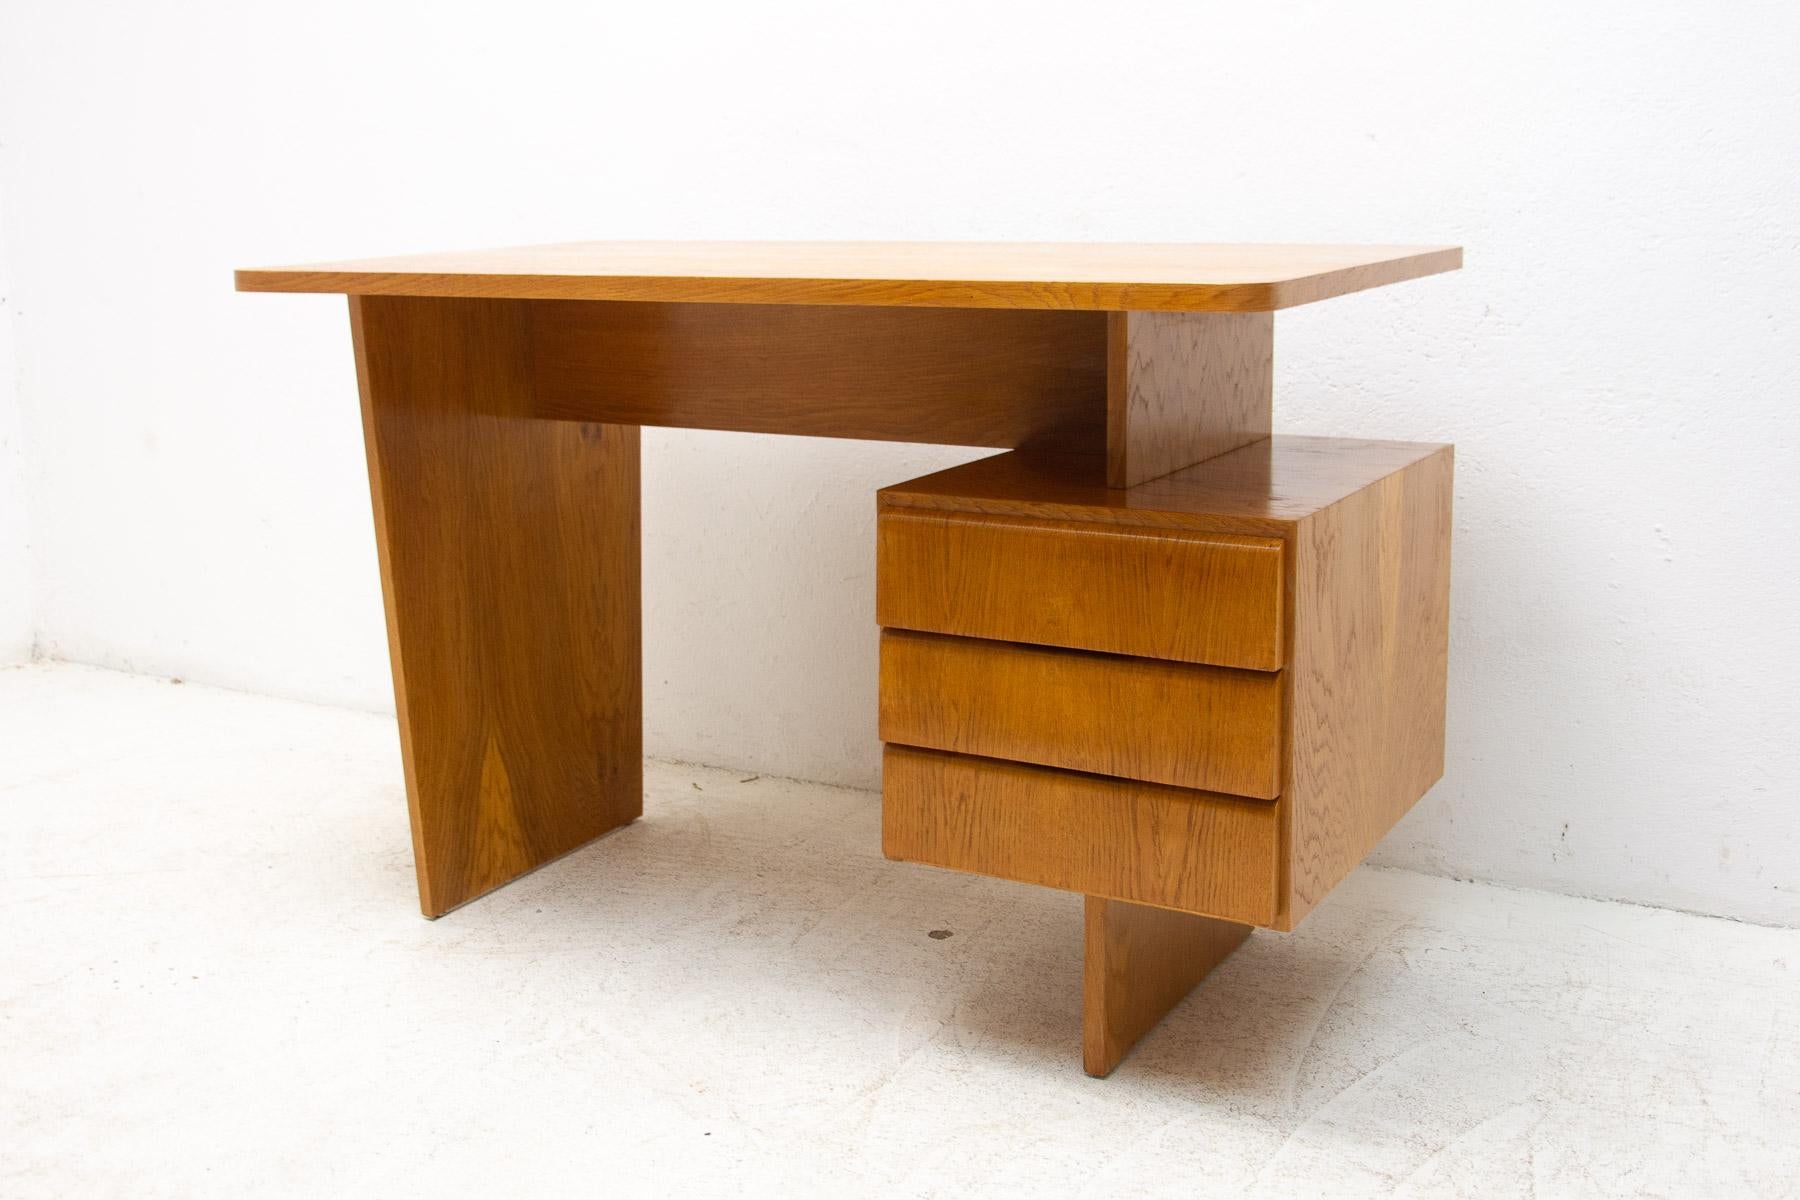 Ce bureau a été conçu par Bohumil Landsman dans les années 1970 pour la société Jitona. Le design est très simple et élégant. Il comporte une section avec 3 tiroirs. Il est en bois de hêtre.

La pièce est entièrement restaurée et en excellent